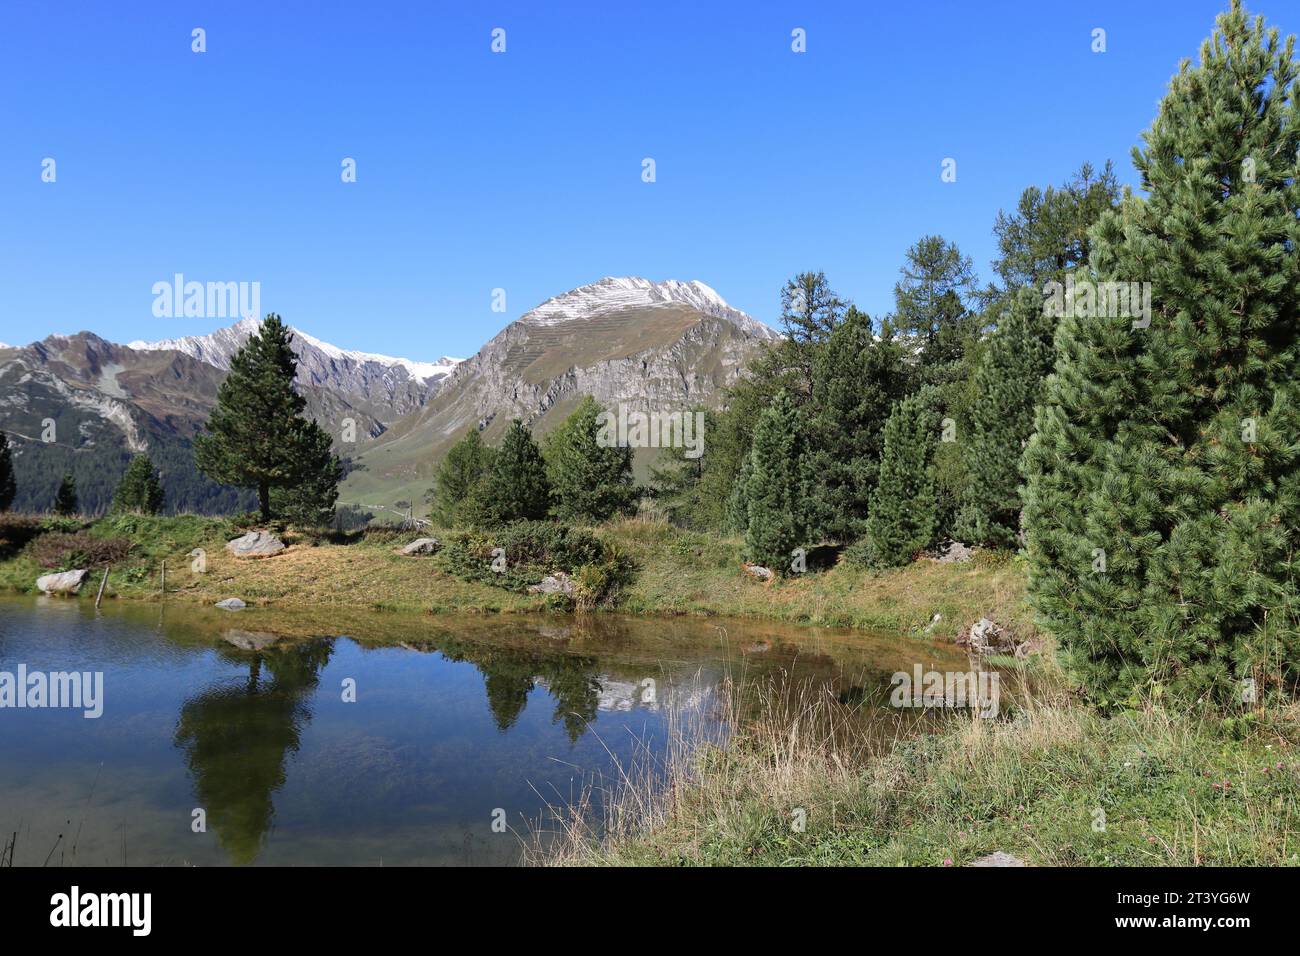 Frente a los picos nevados de las montañas en el fondo, las siluetas de los árboles se reflejan en un lago de montaña azul claro Foto de stock